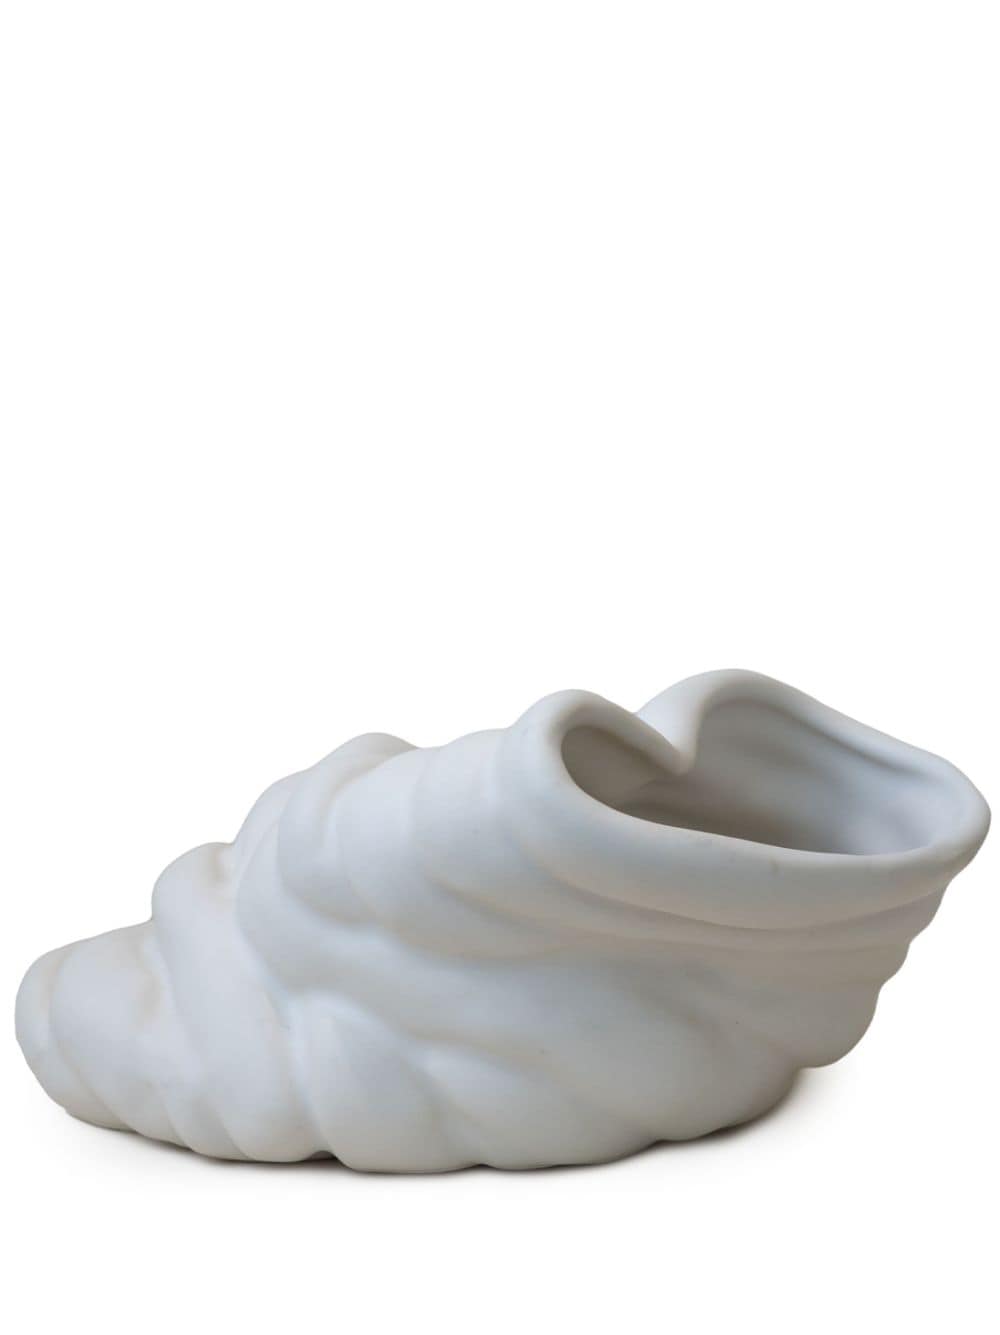 Completedworks Running Against The Tide vase (8.5cm) - White von Completedworks